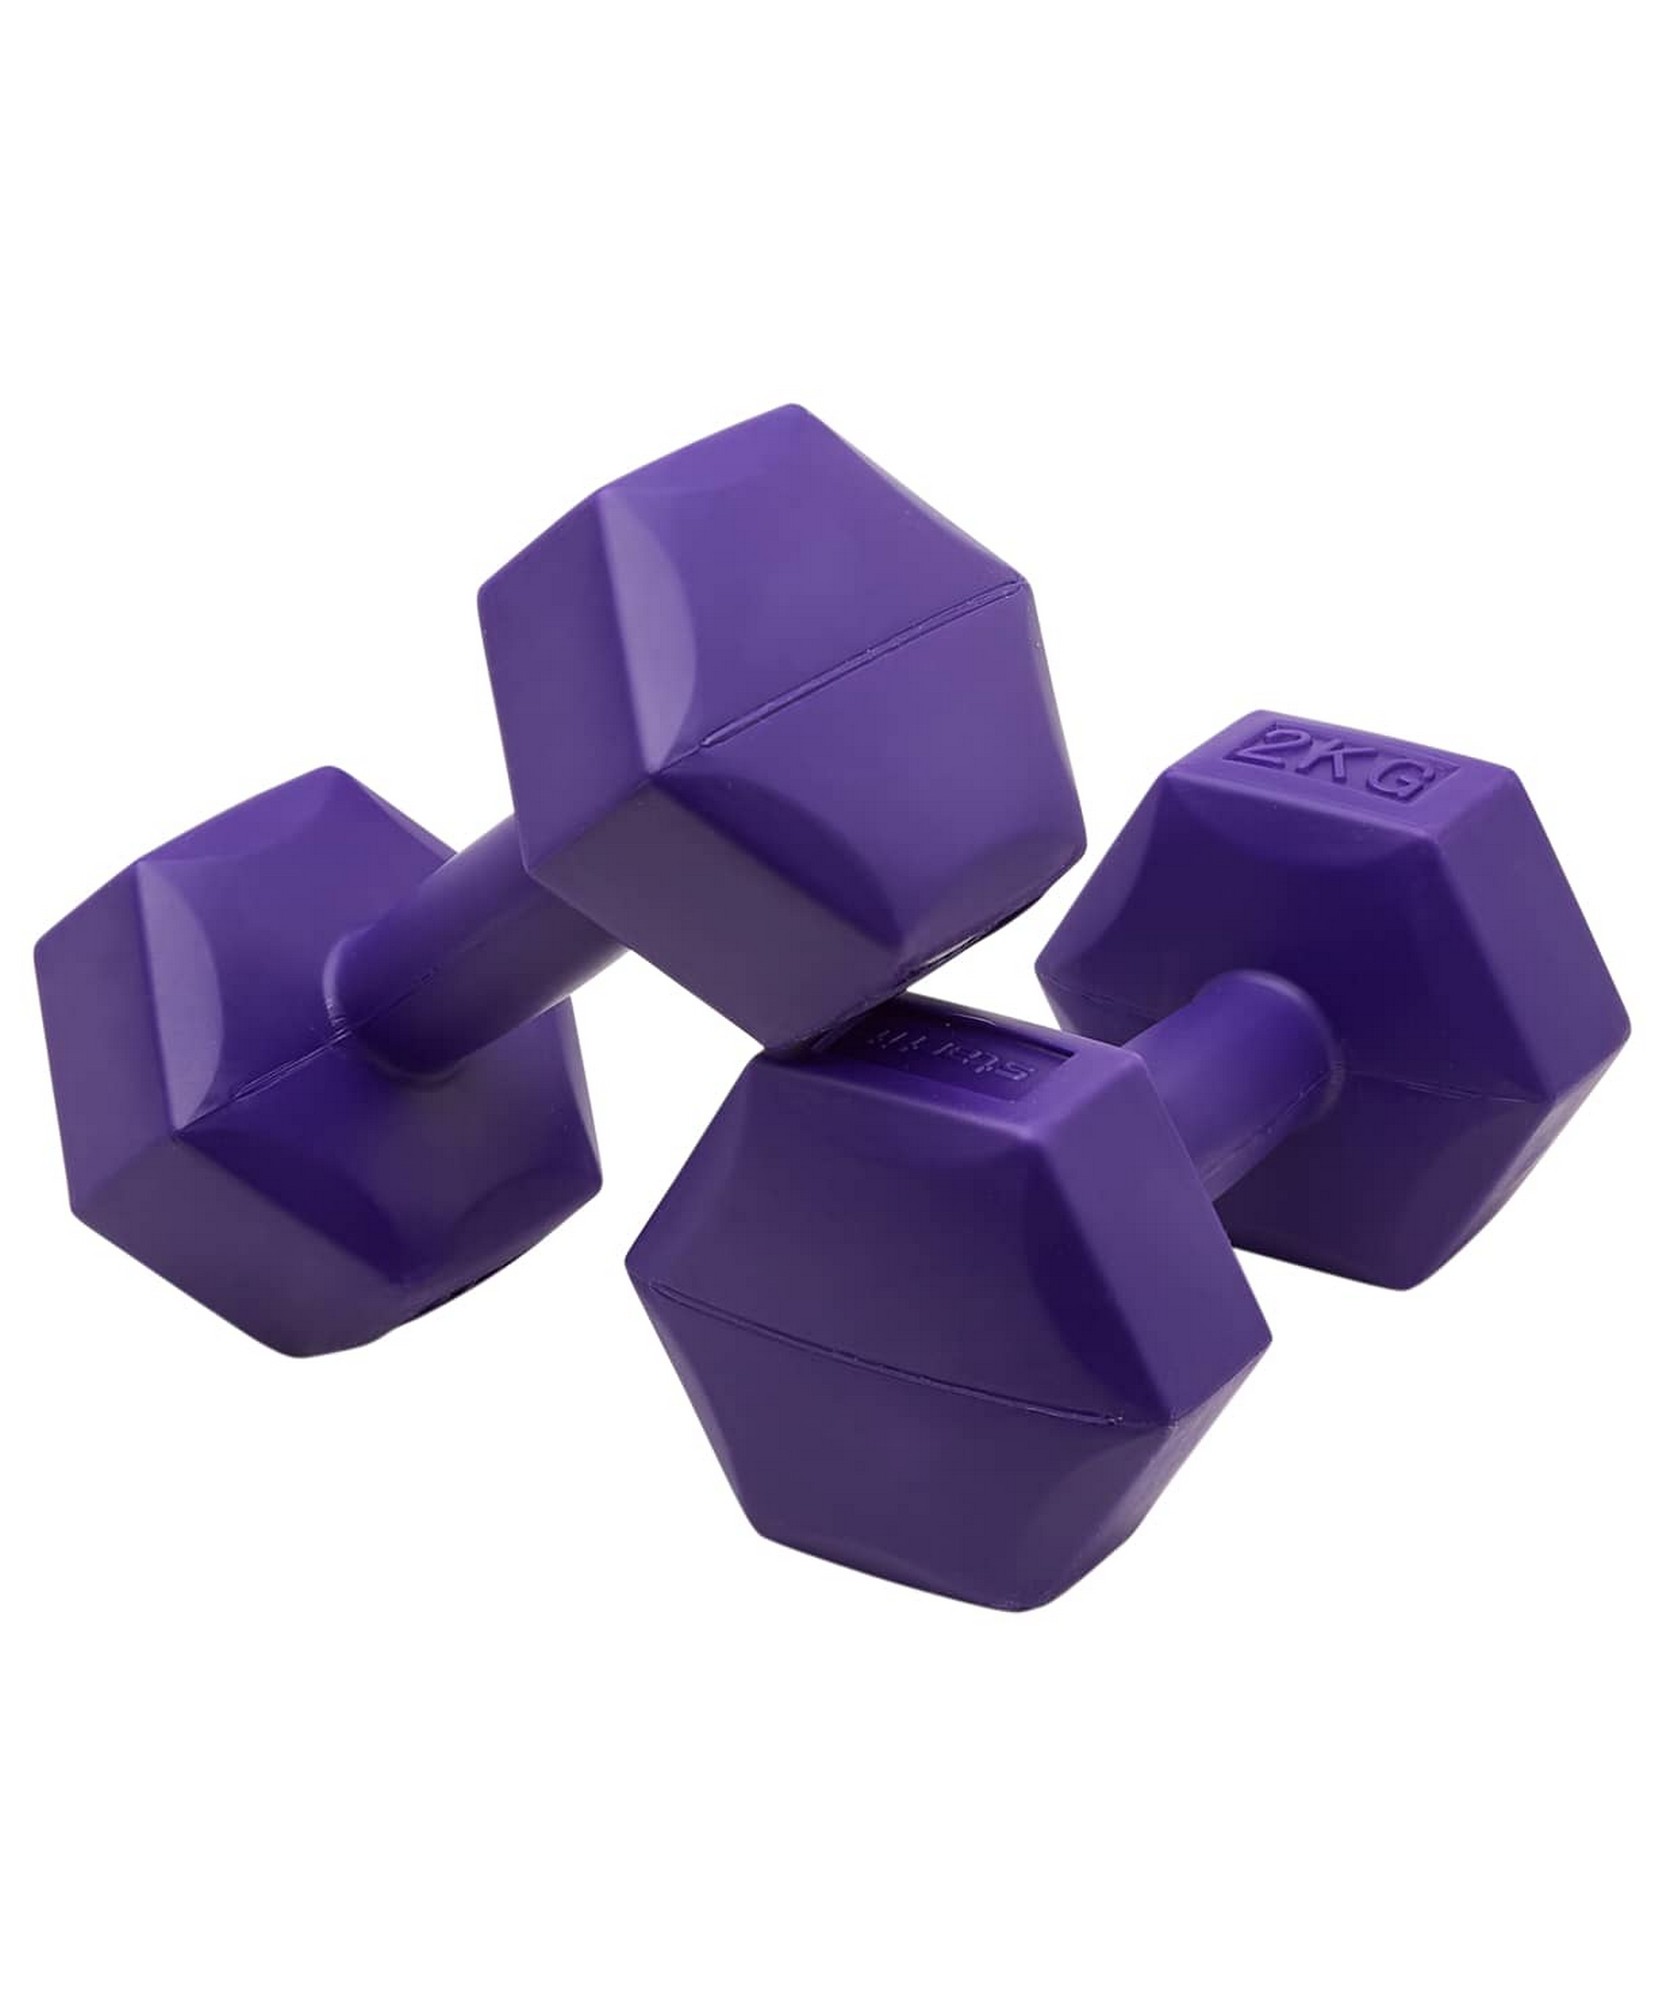 Гантель гексагональная, пластиковая 2 кг BaseFit DB-305 фиолетовый, 2 шт